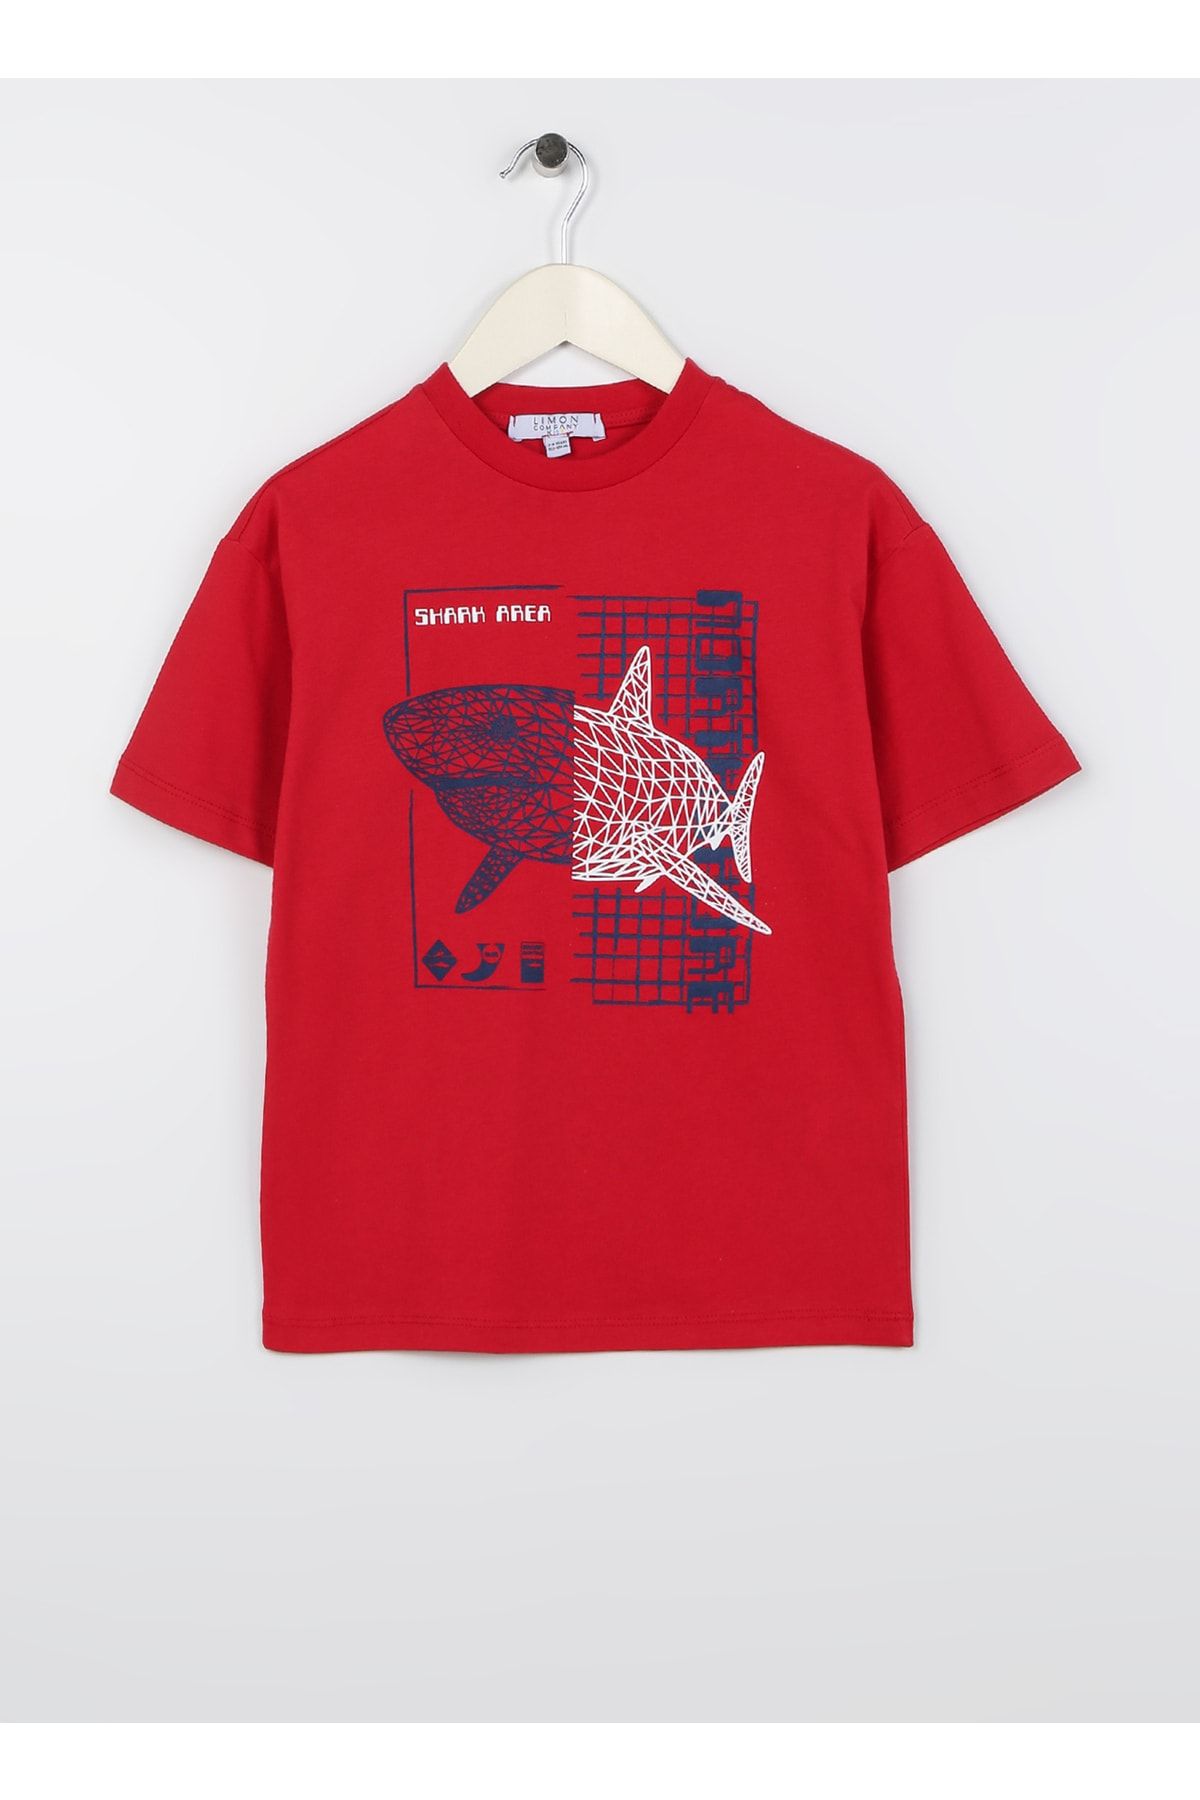 LİMON COMPANY Limon Baskılı Kırmızı Erkek Çocuk T-shirt Free Boy-23